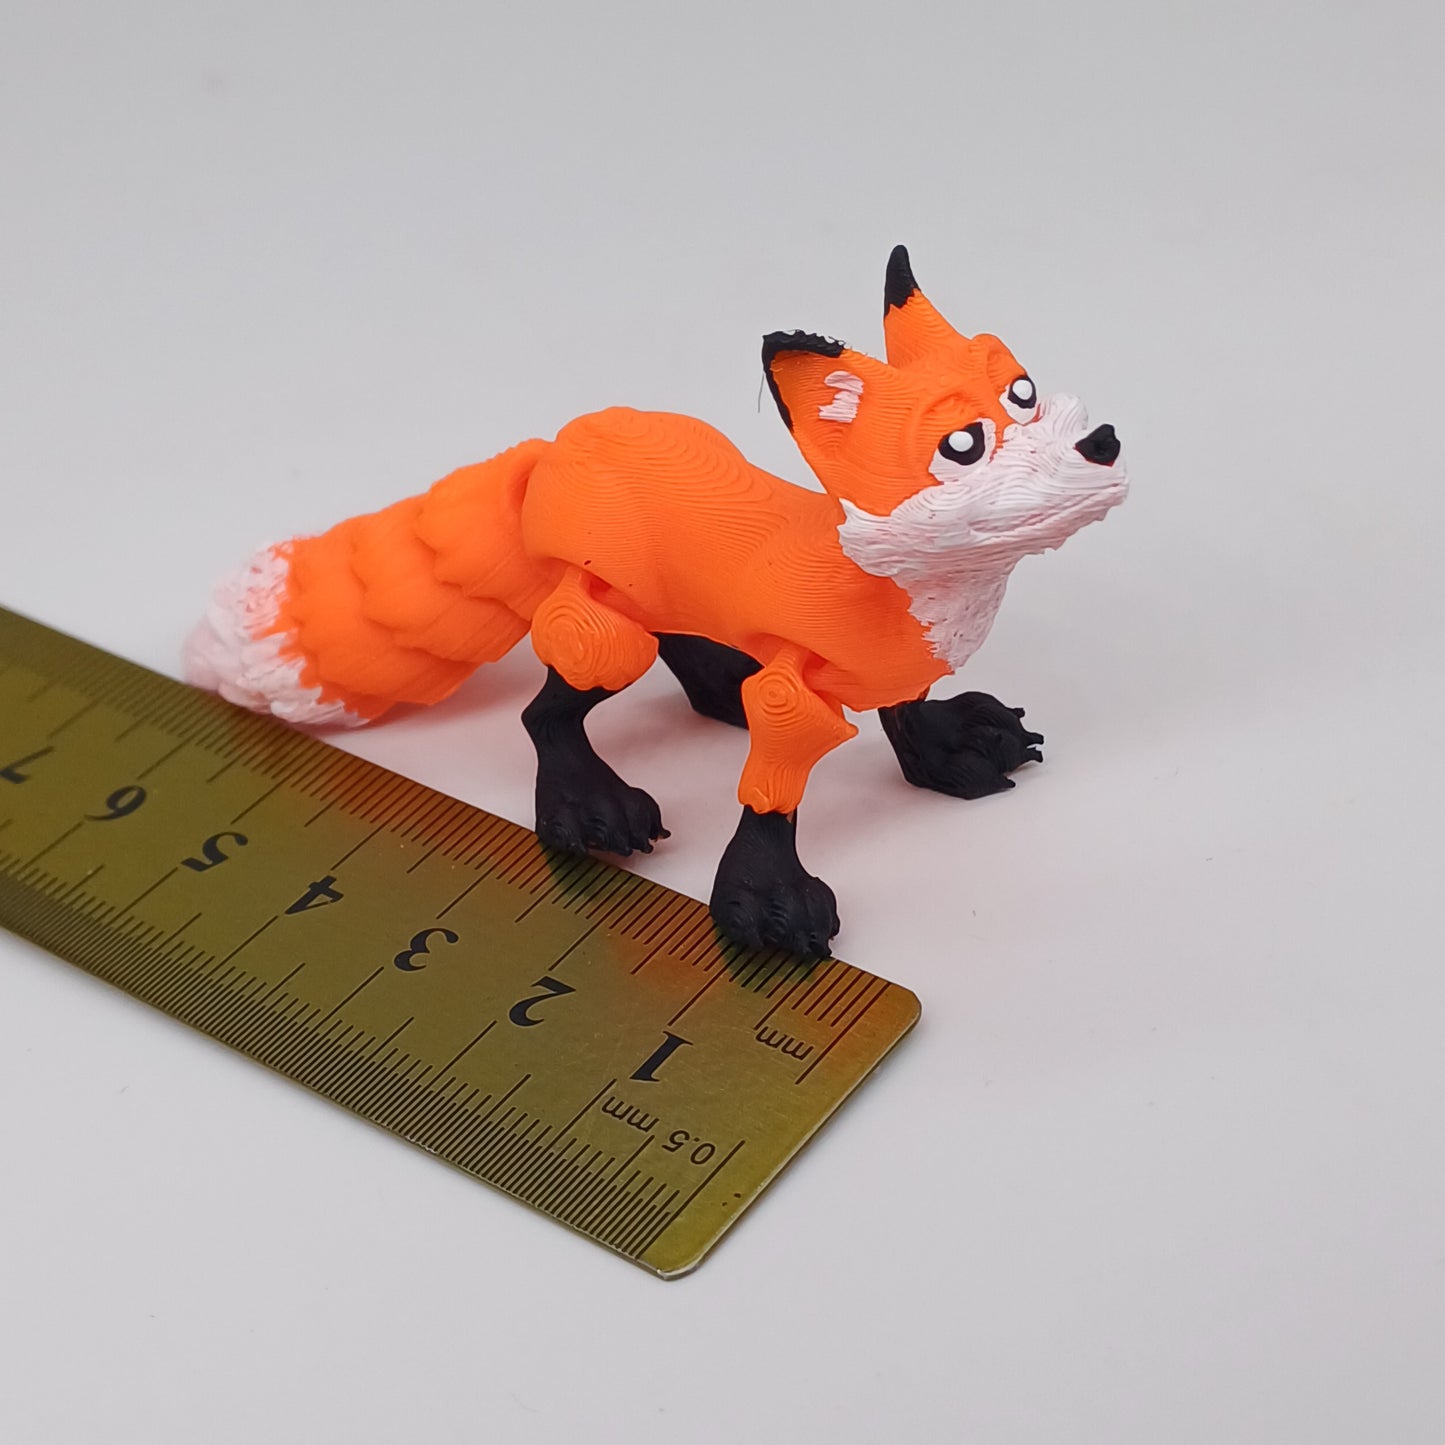 Fox miniature in scale 1:12